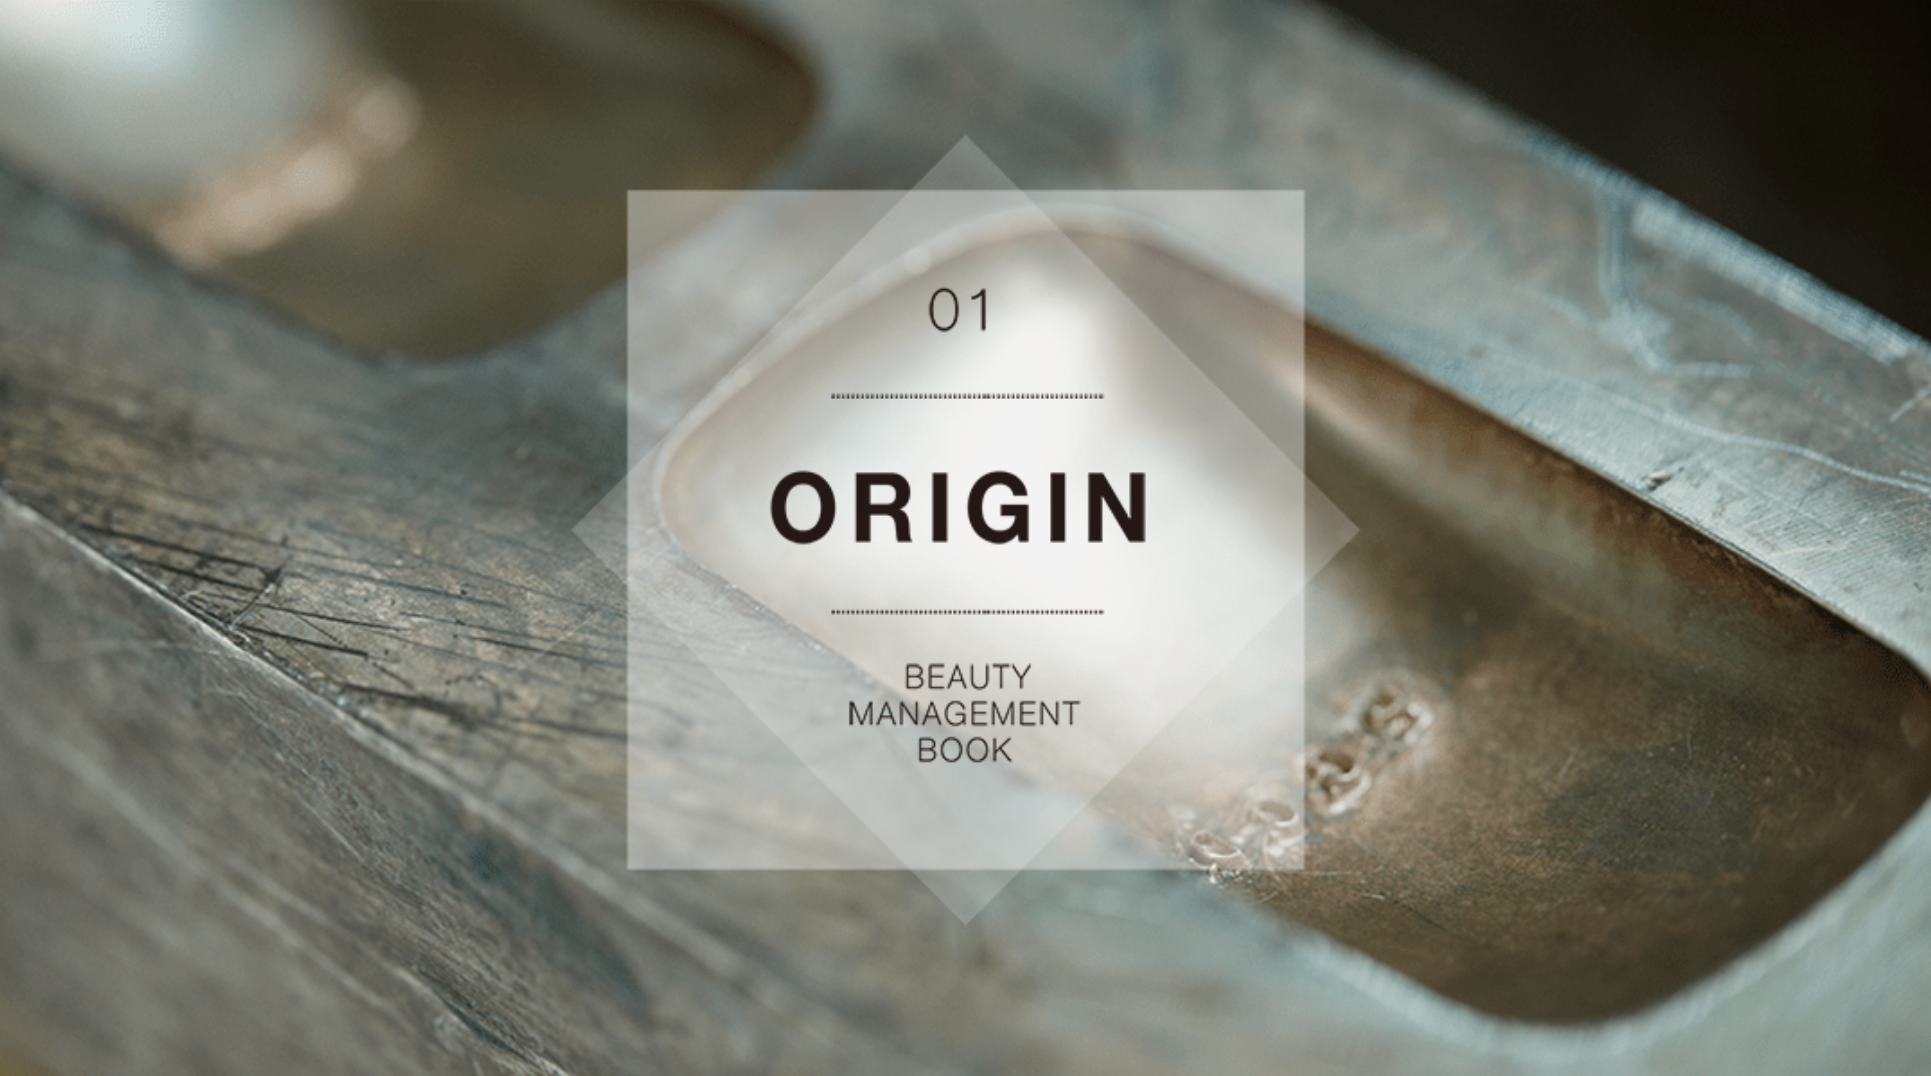 Beauty Management Book 01 ORIGINP.G.C.D.JAPAN代表 野田泰平、 そのルーツを旅する物語。